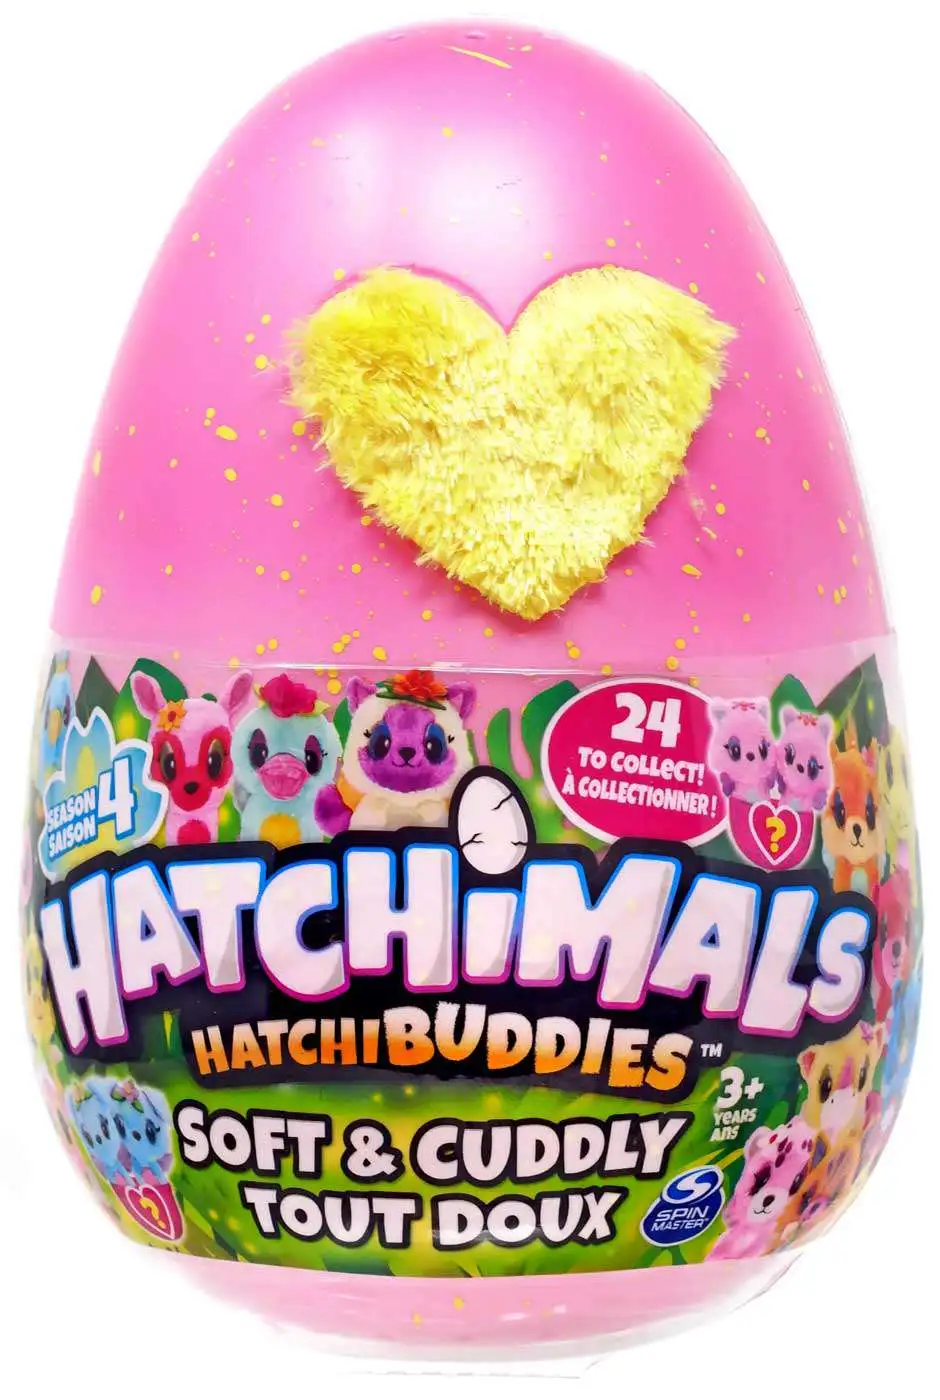 Hatchimals HatchiBuddies Soft & Cuddly Season 3 Spielzeug Plüschtier NEU OVP! 